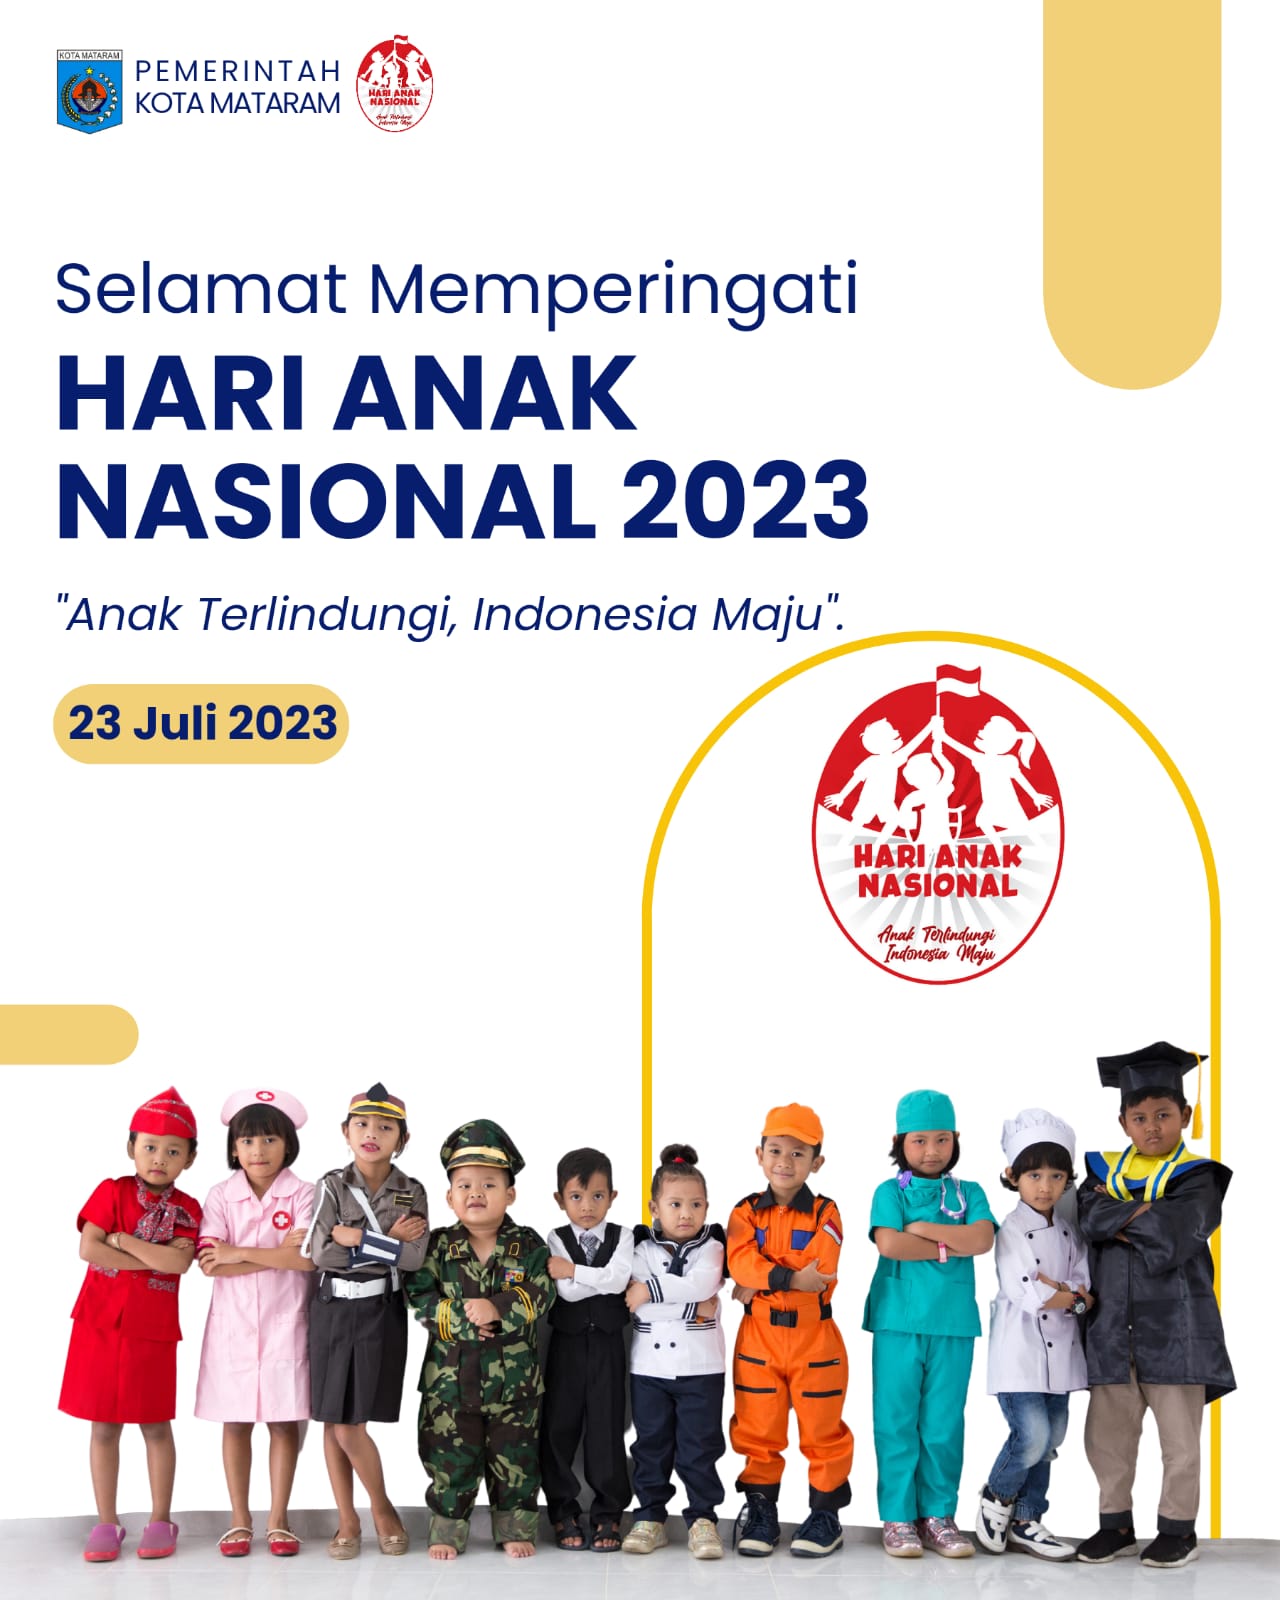 Selamat Hari Anak Nasional 2023